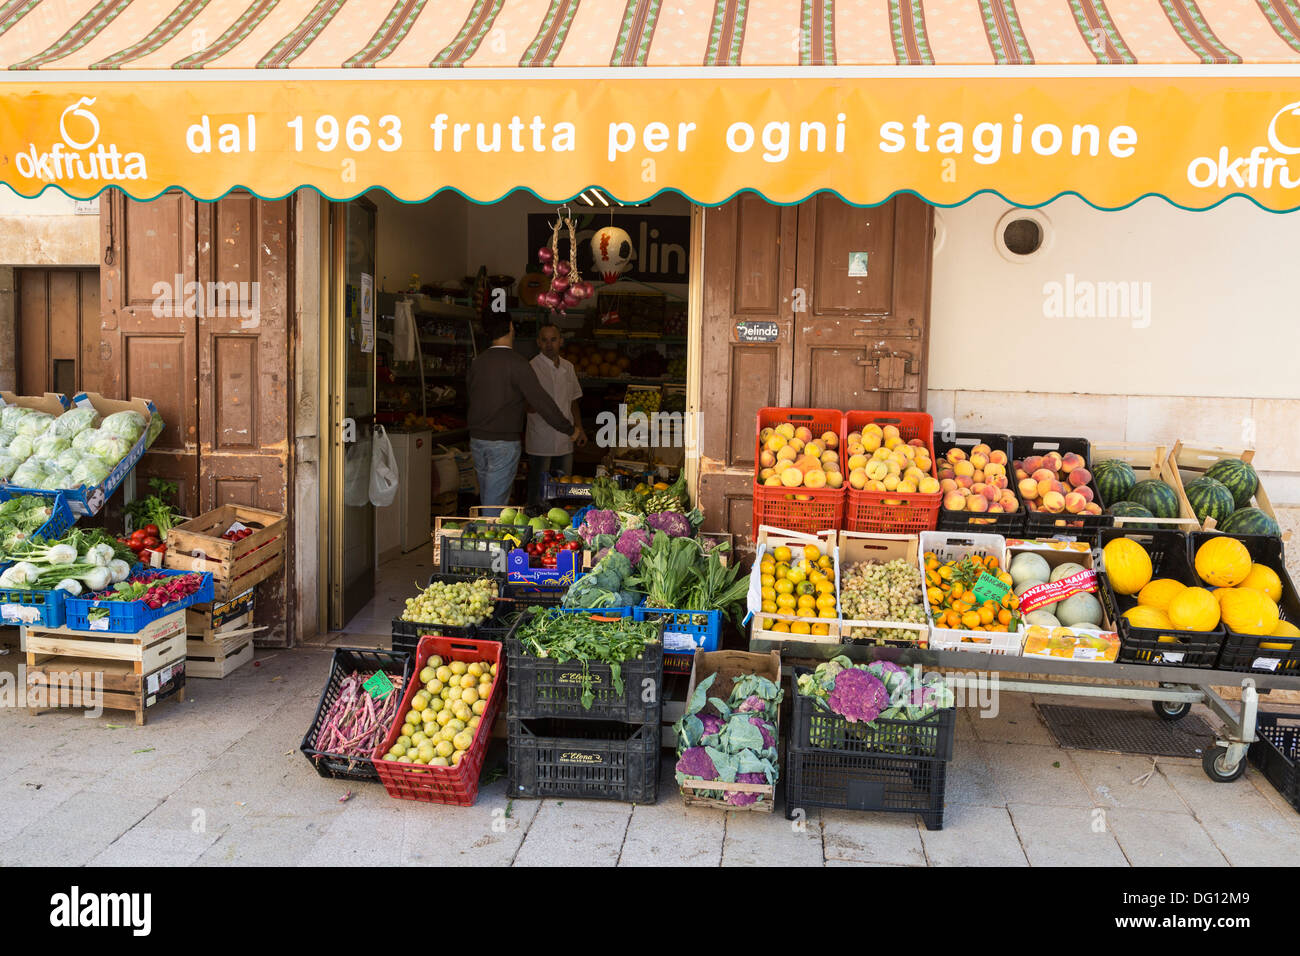 Greengrocer shop in the Italian village of Sammichele di Bari, Puglia, Italy Stock Photo